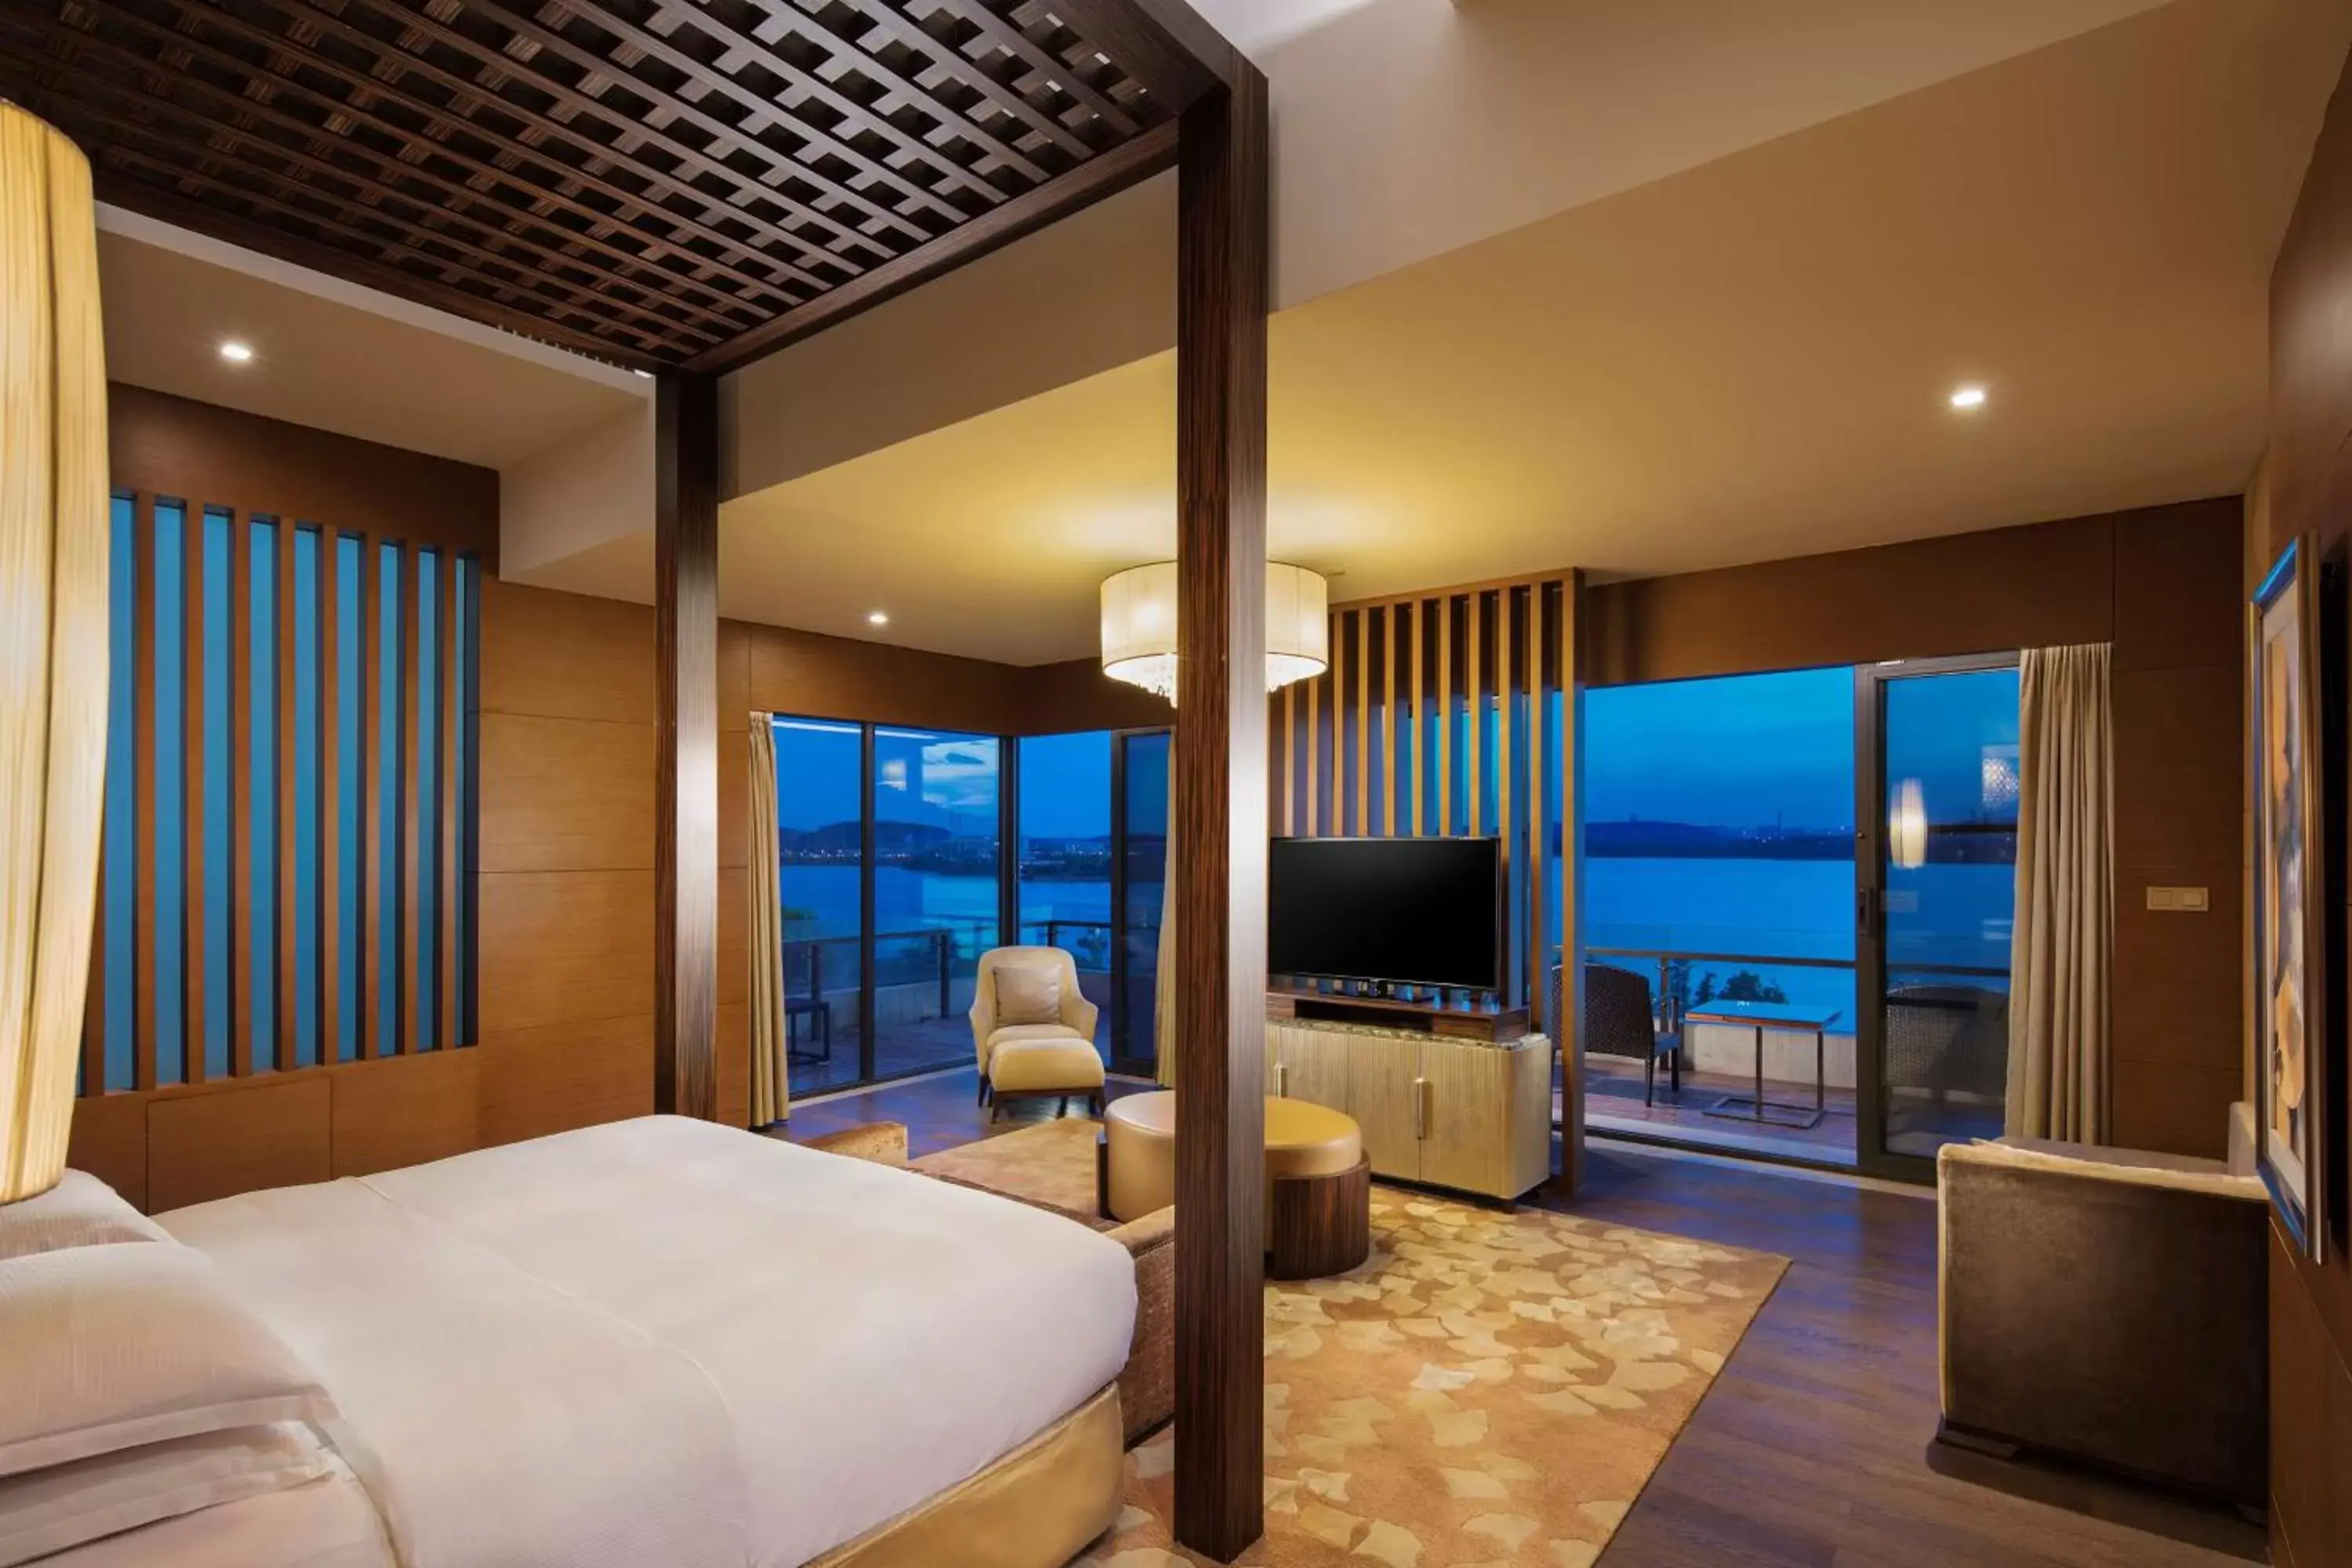 Bedroom in Hilton Wuhan Optics Valley